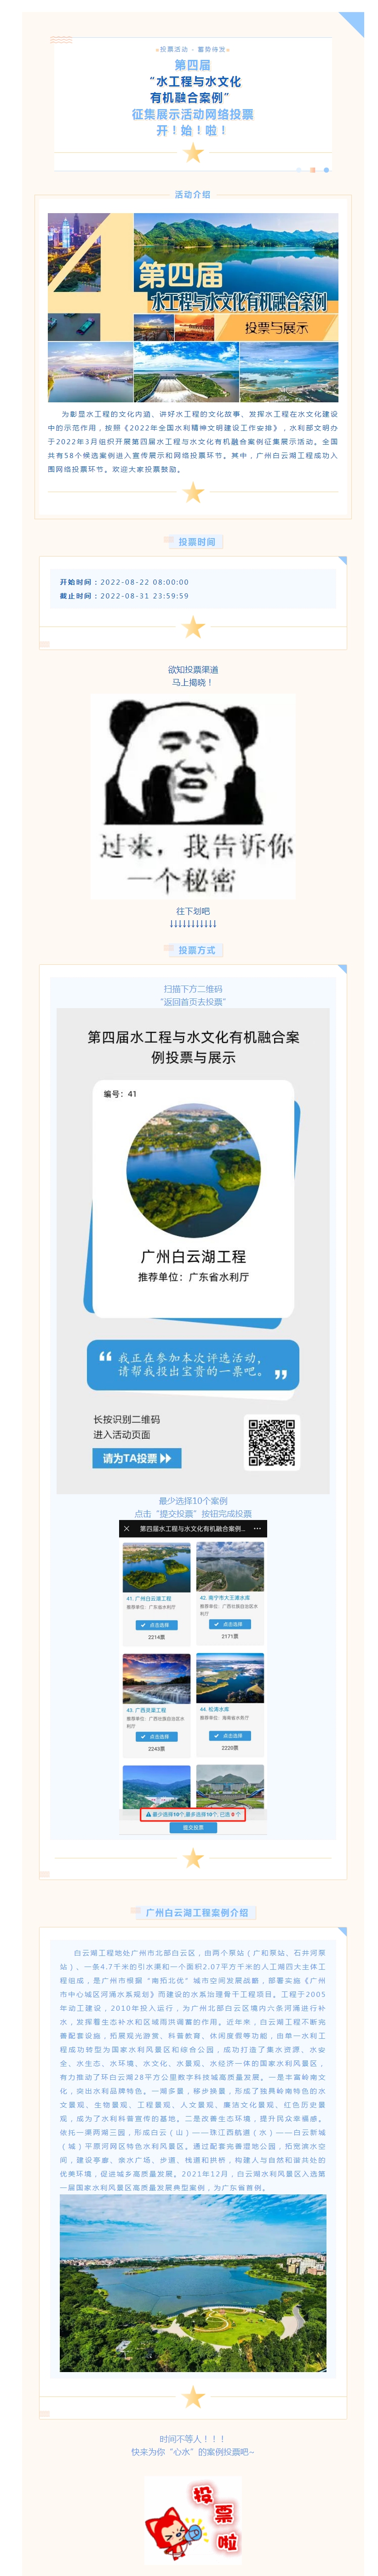 请投票支持水工程与水文化有机融合案例：广州白云湖！_副本.jpg